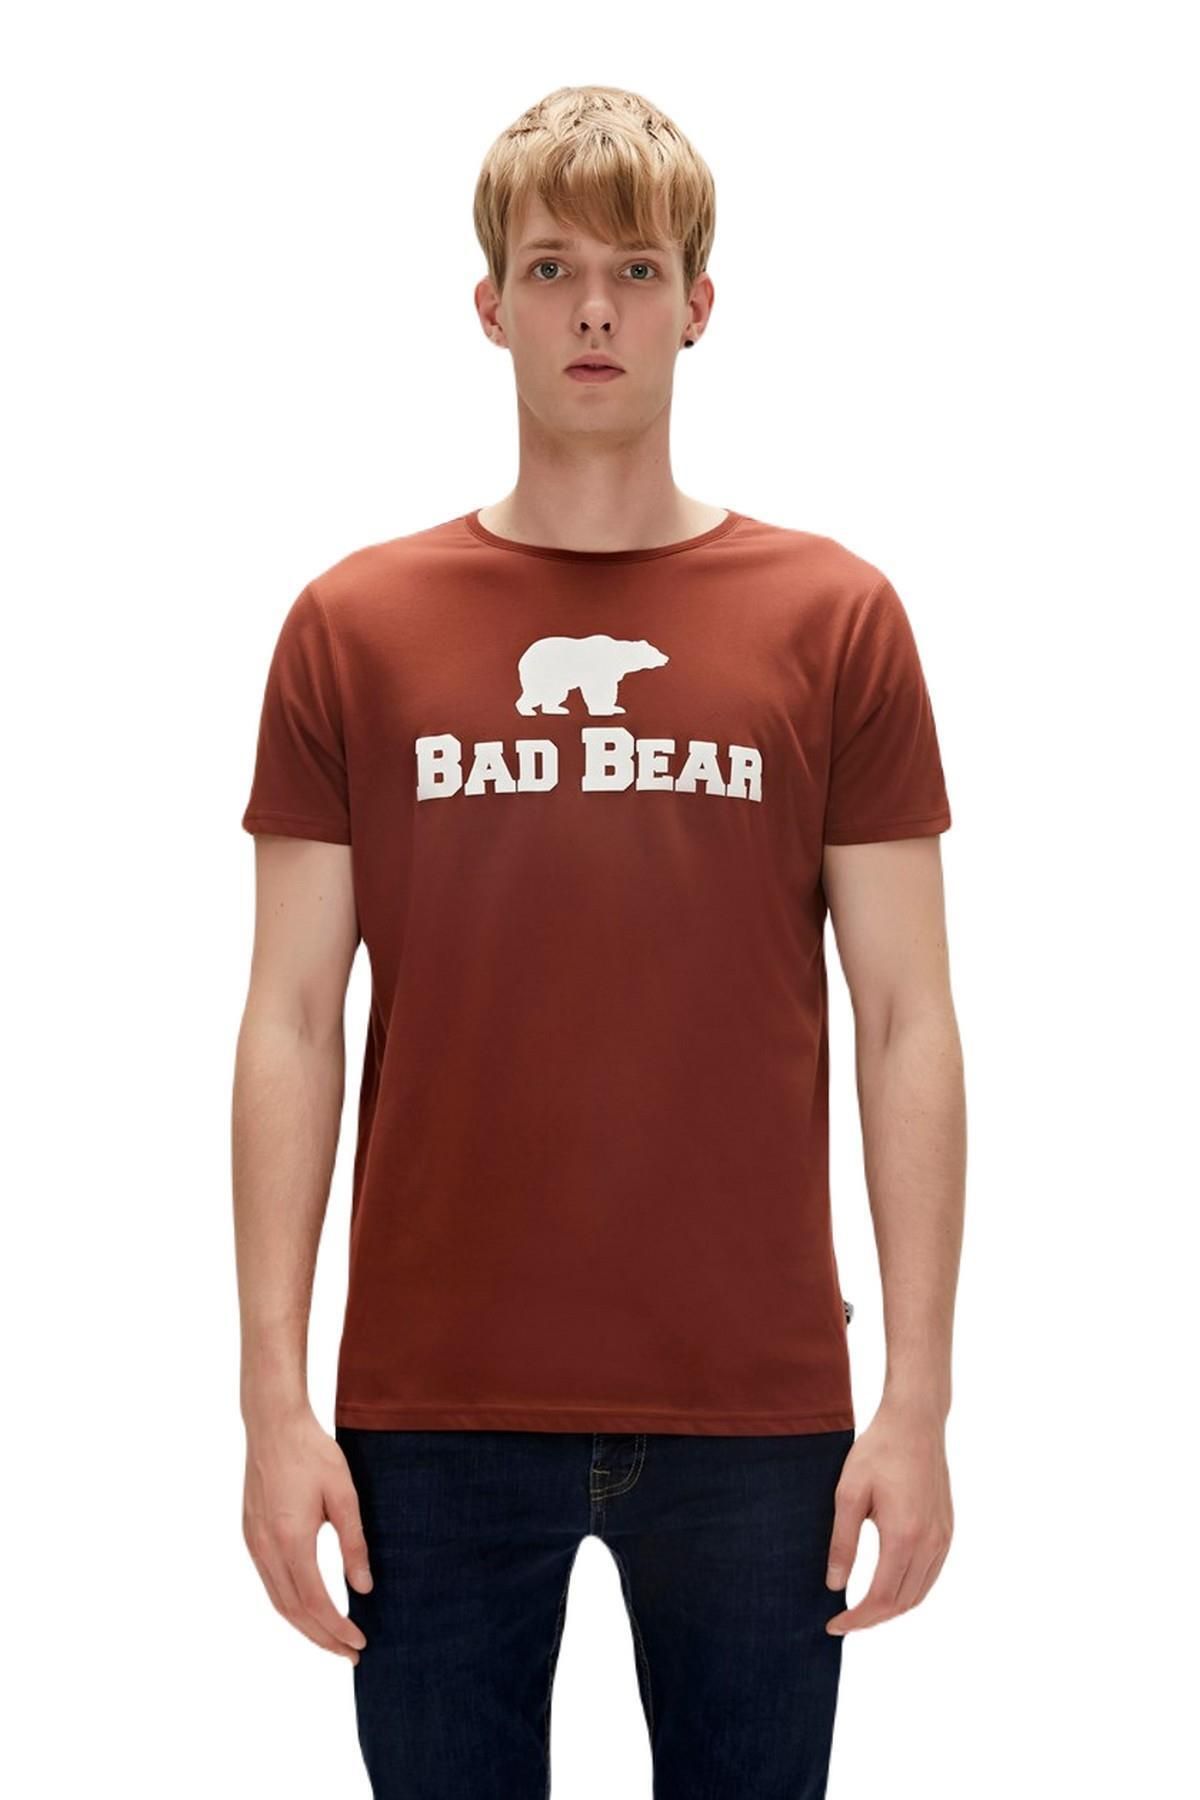 Bad Bear 19.01.07.002-c122 Tee Erkek T-shirt